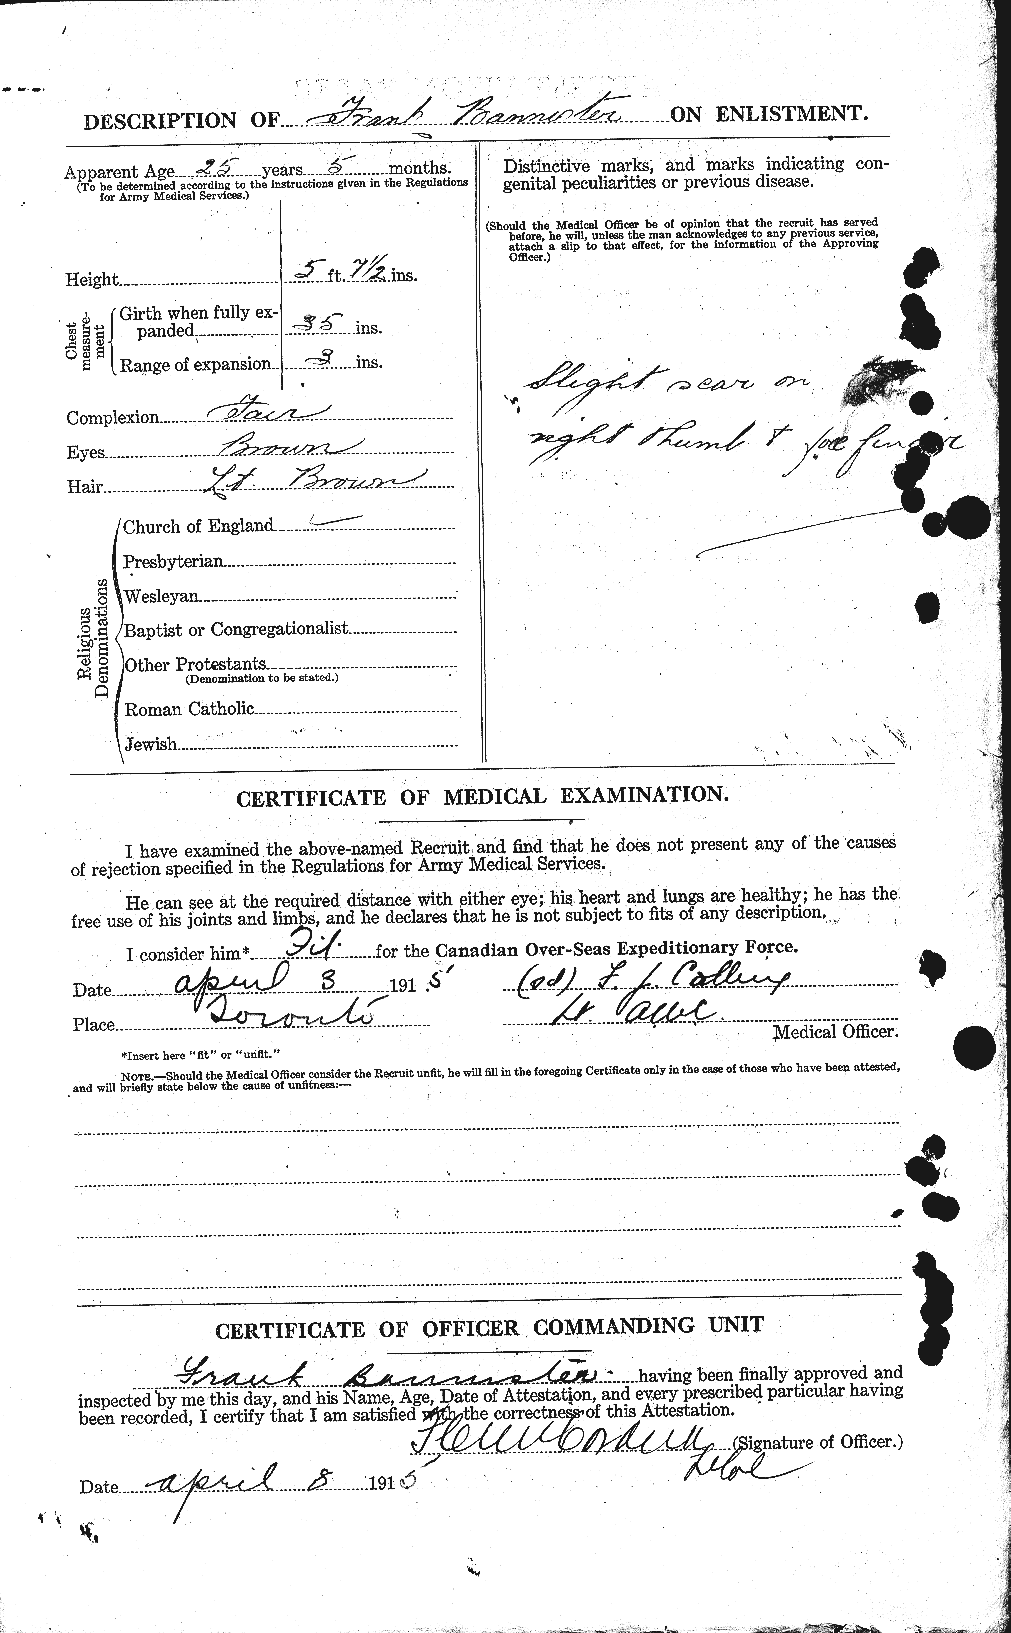 Dossiers du Personnel de la Première Guerre mondiale - CEC 224803b